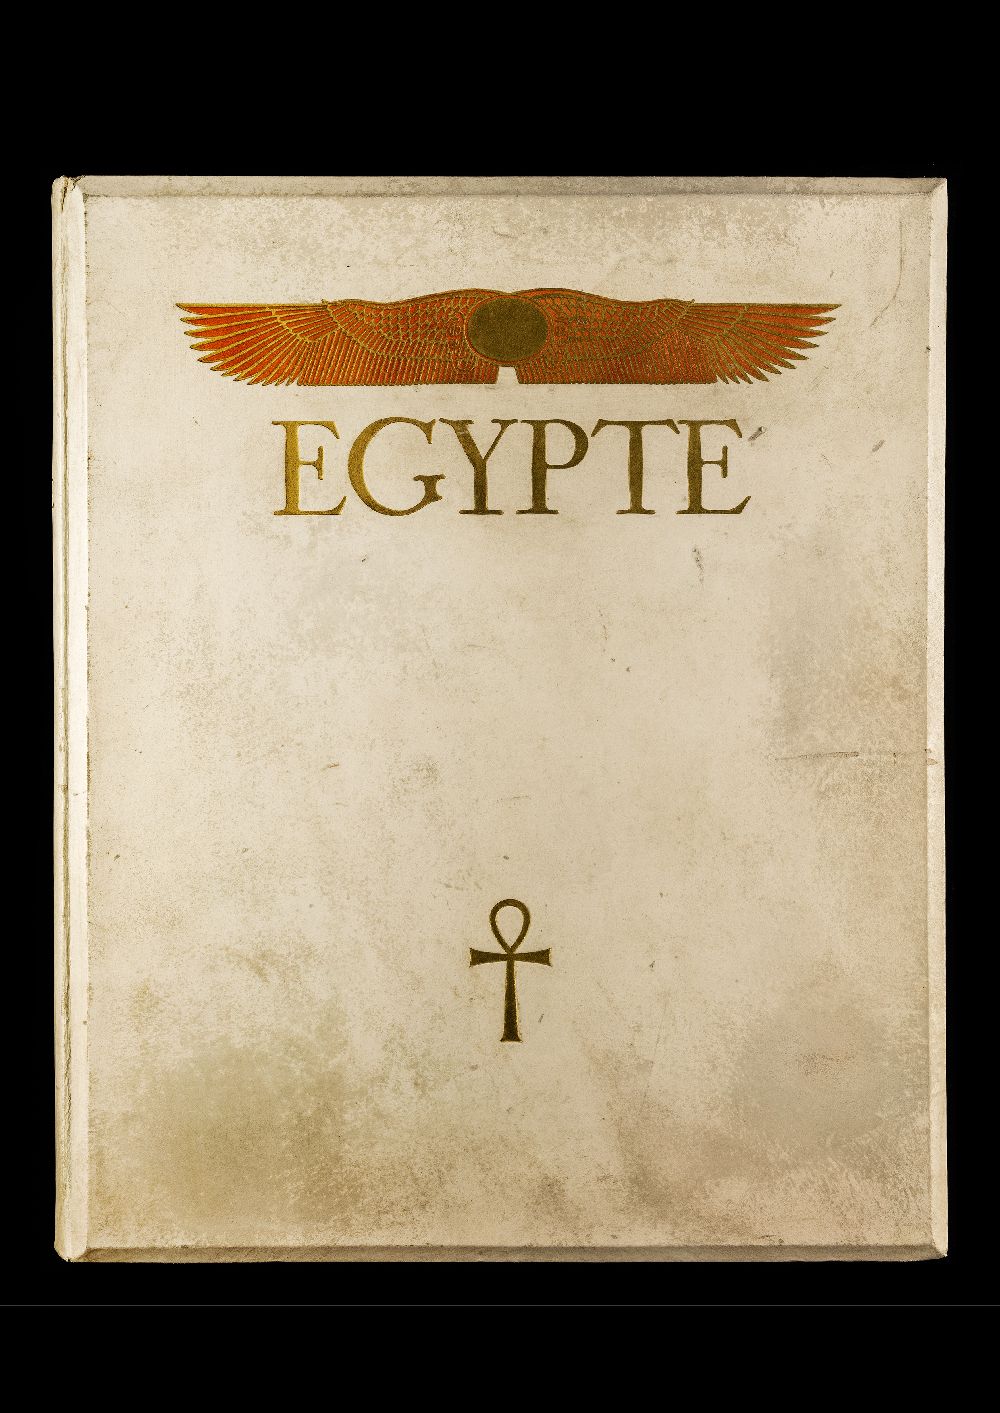 Το εξώφυλλο του τόμου Égypte,  εκδότης Paul Trembley, Γενεύη (1932).